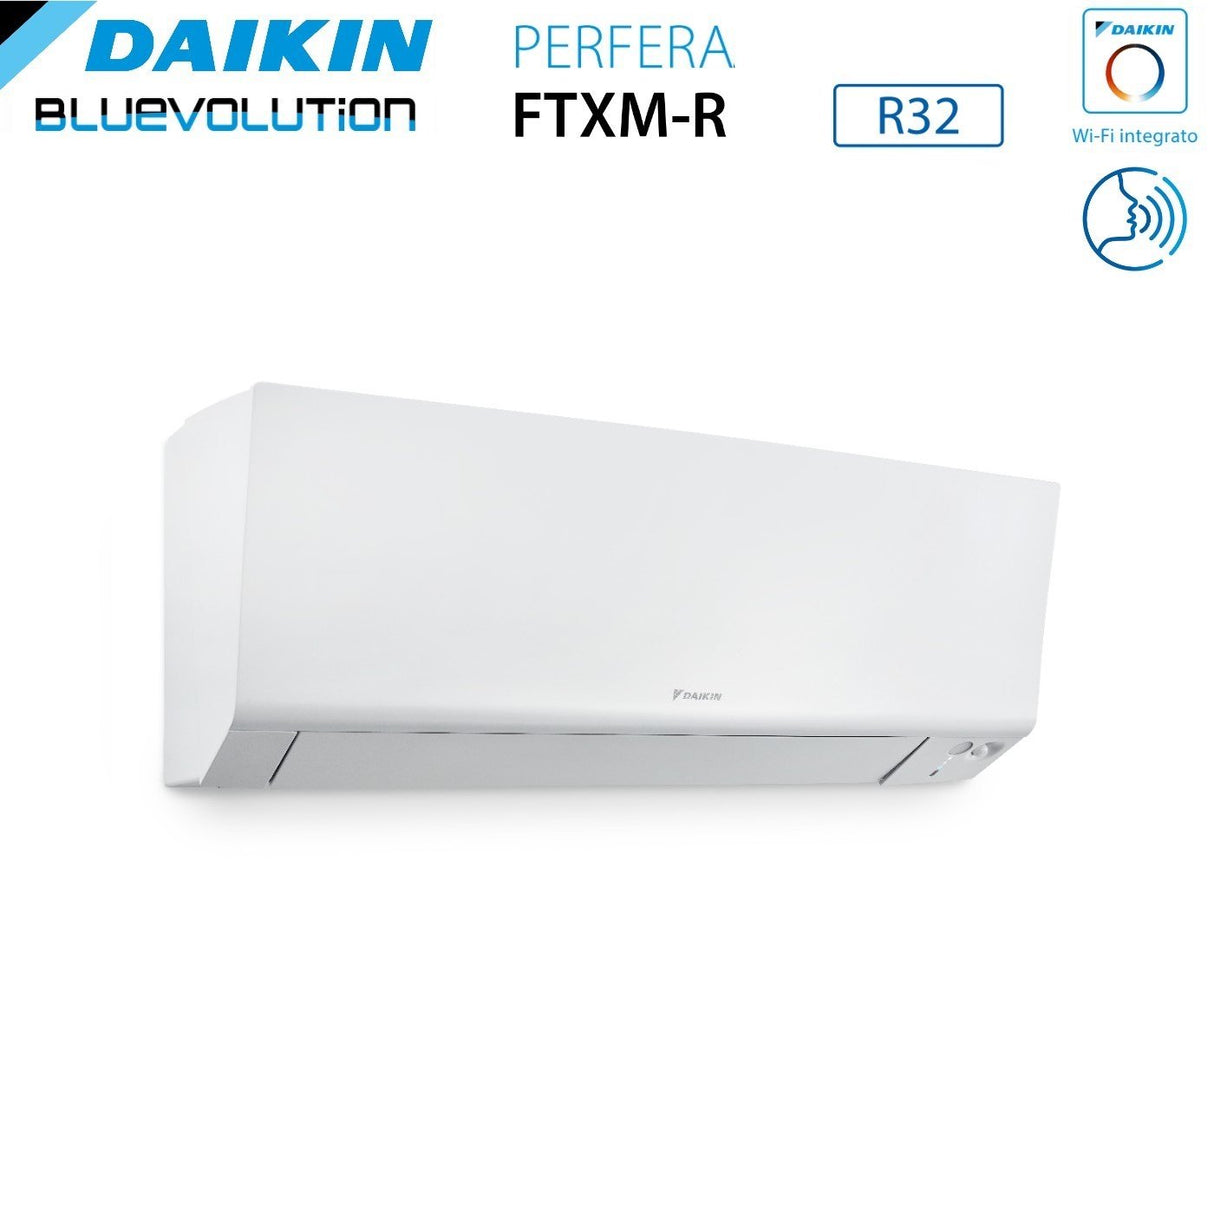 immagine-4-daikin-climatizzatore-condizionatore-daikin-bluevolution-quadri-split-inverter-serie-ftxmr-perfera-wall-9999-con-4mxm68a-r-32-wi-fi-integrato-9000900090009000-garanzia-italiana